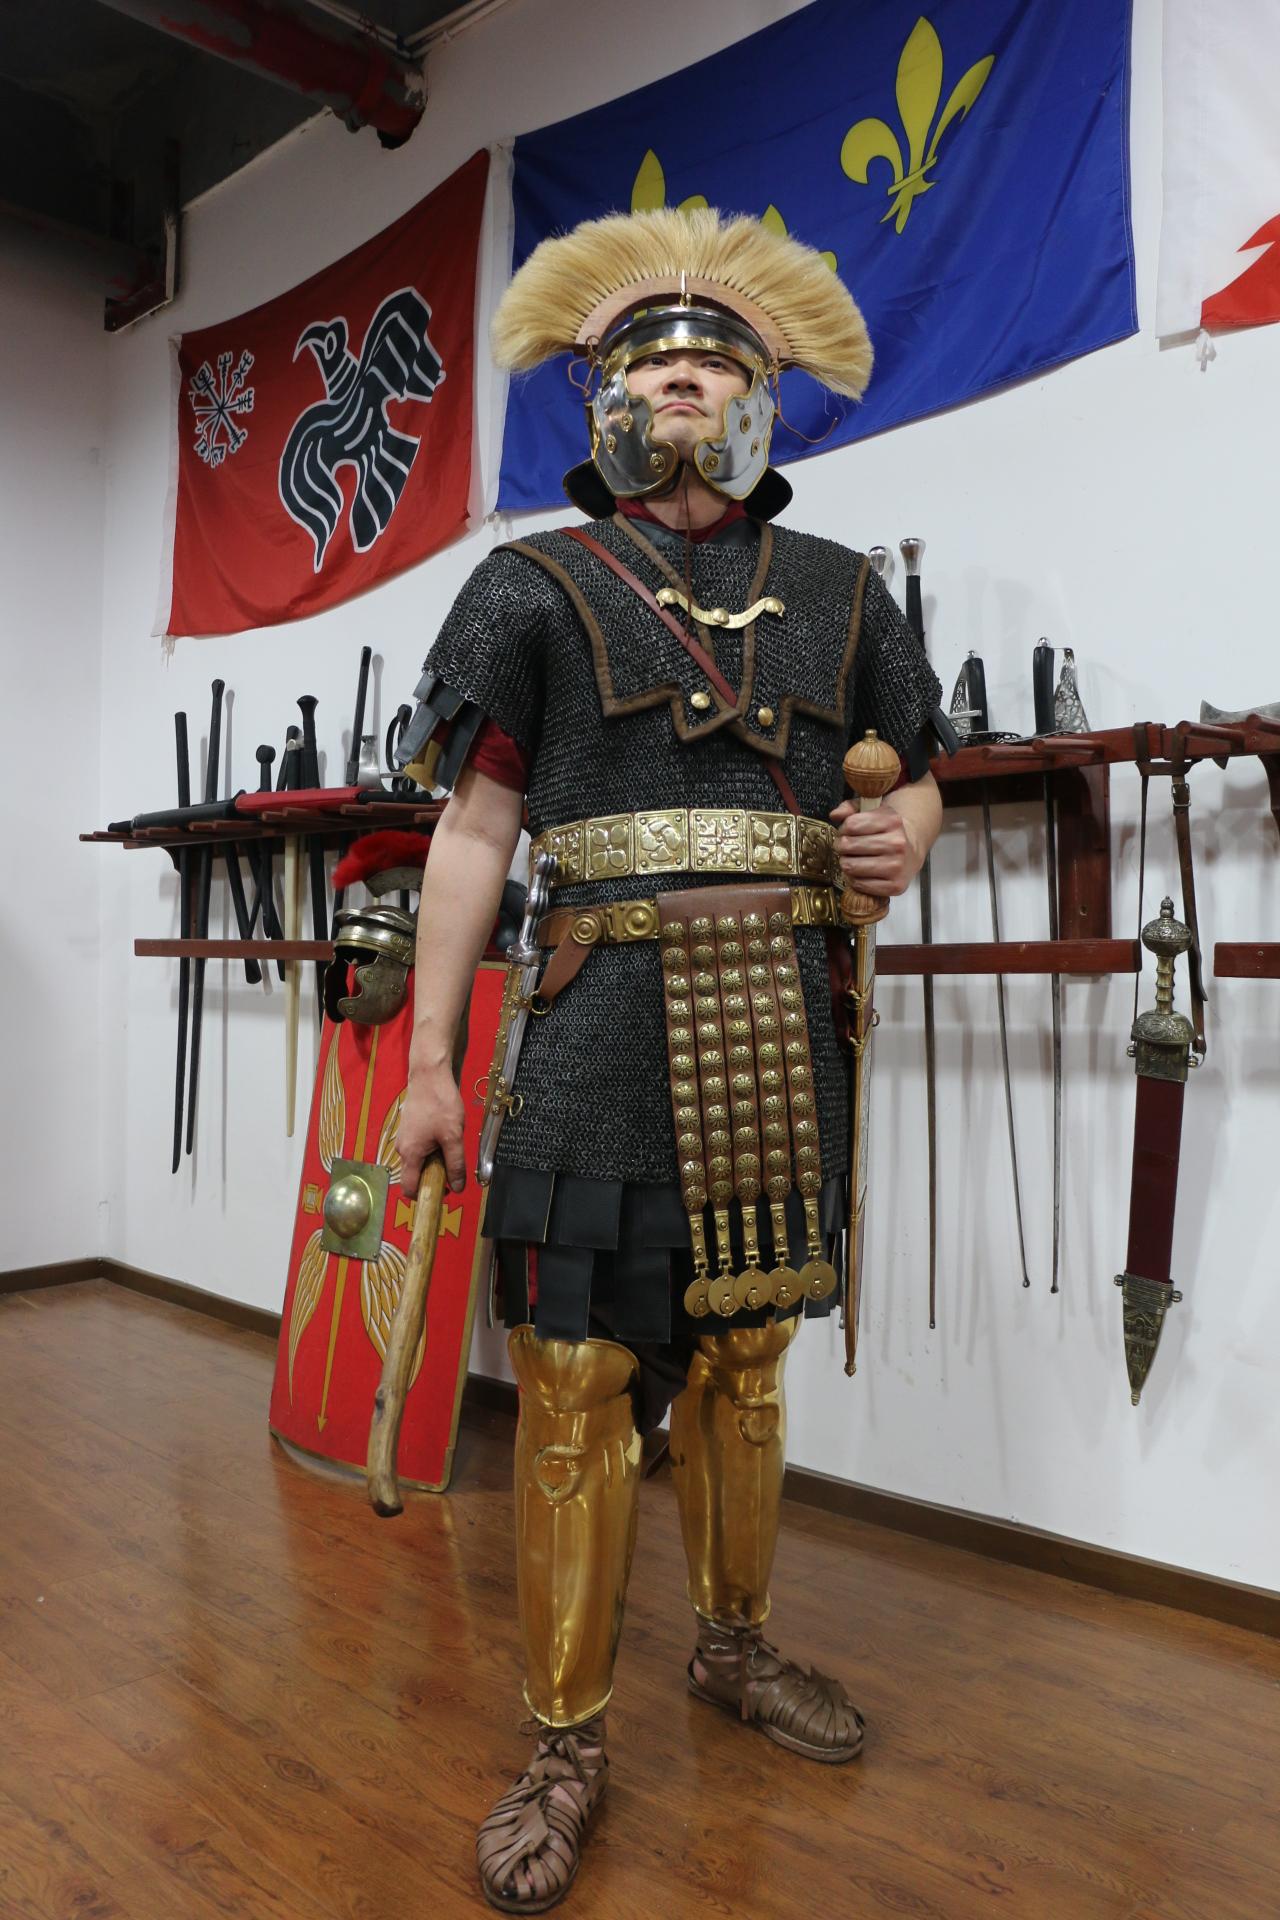 持剑青铜盔甲的罗马士兵 库存照片. 图片 包括有 罗马, 服装, 盔甲, 帝国, 披风, 毛皮, 姿势 - 217913976